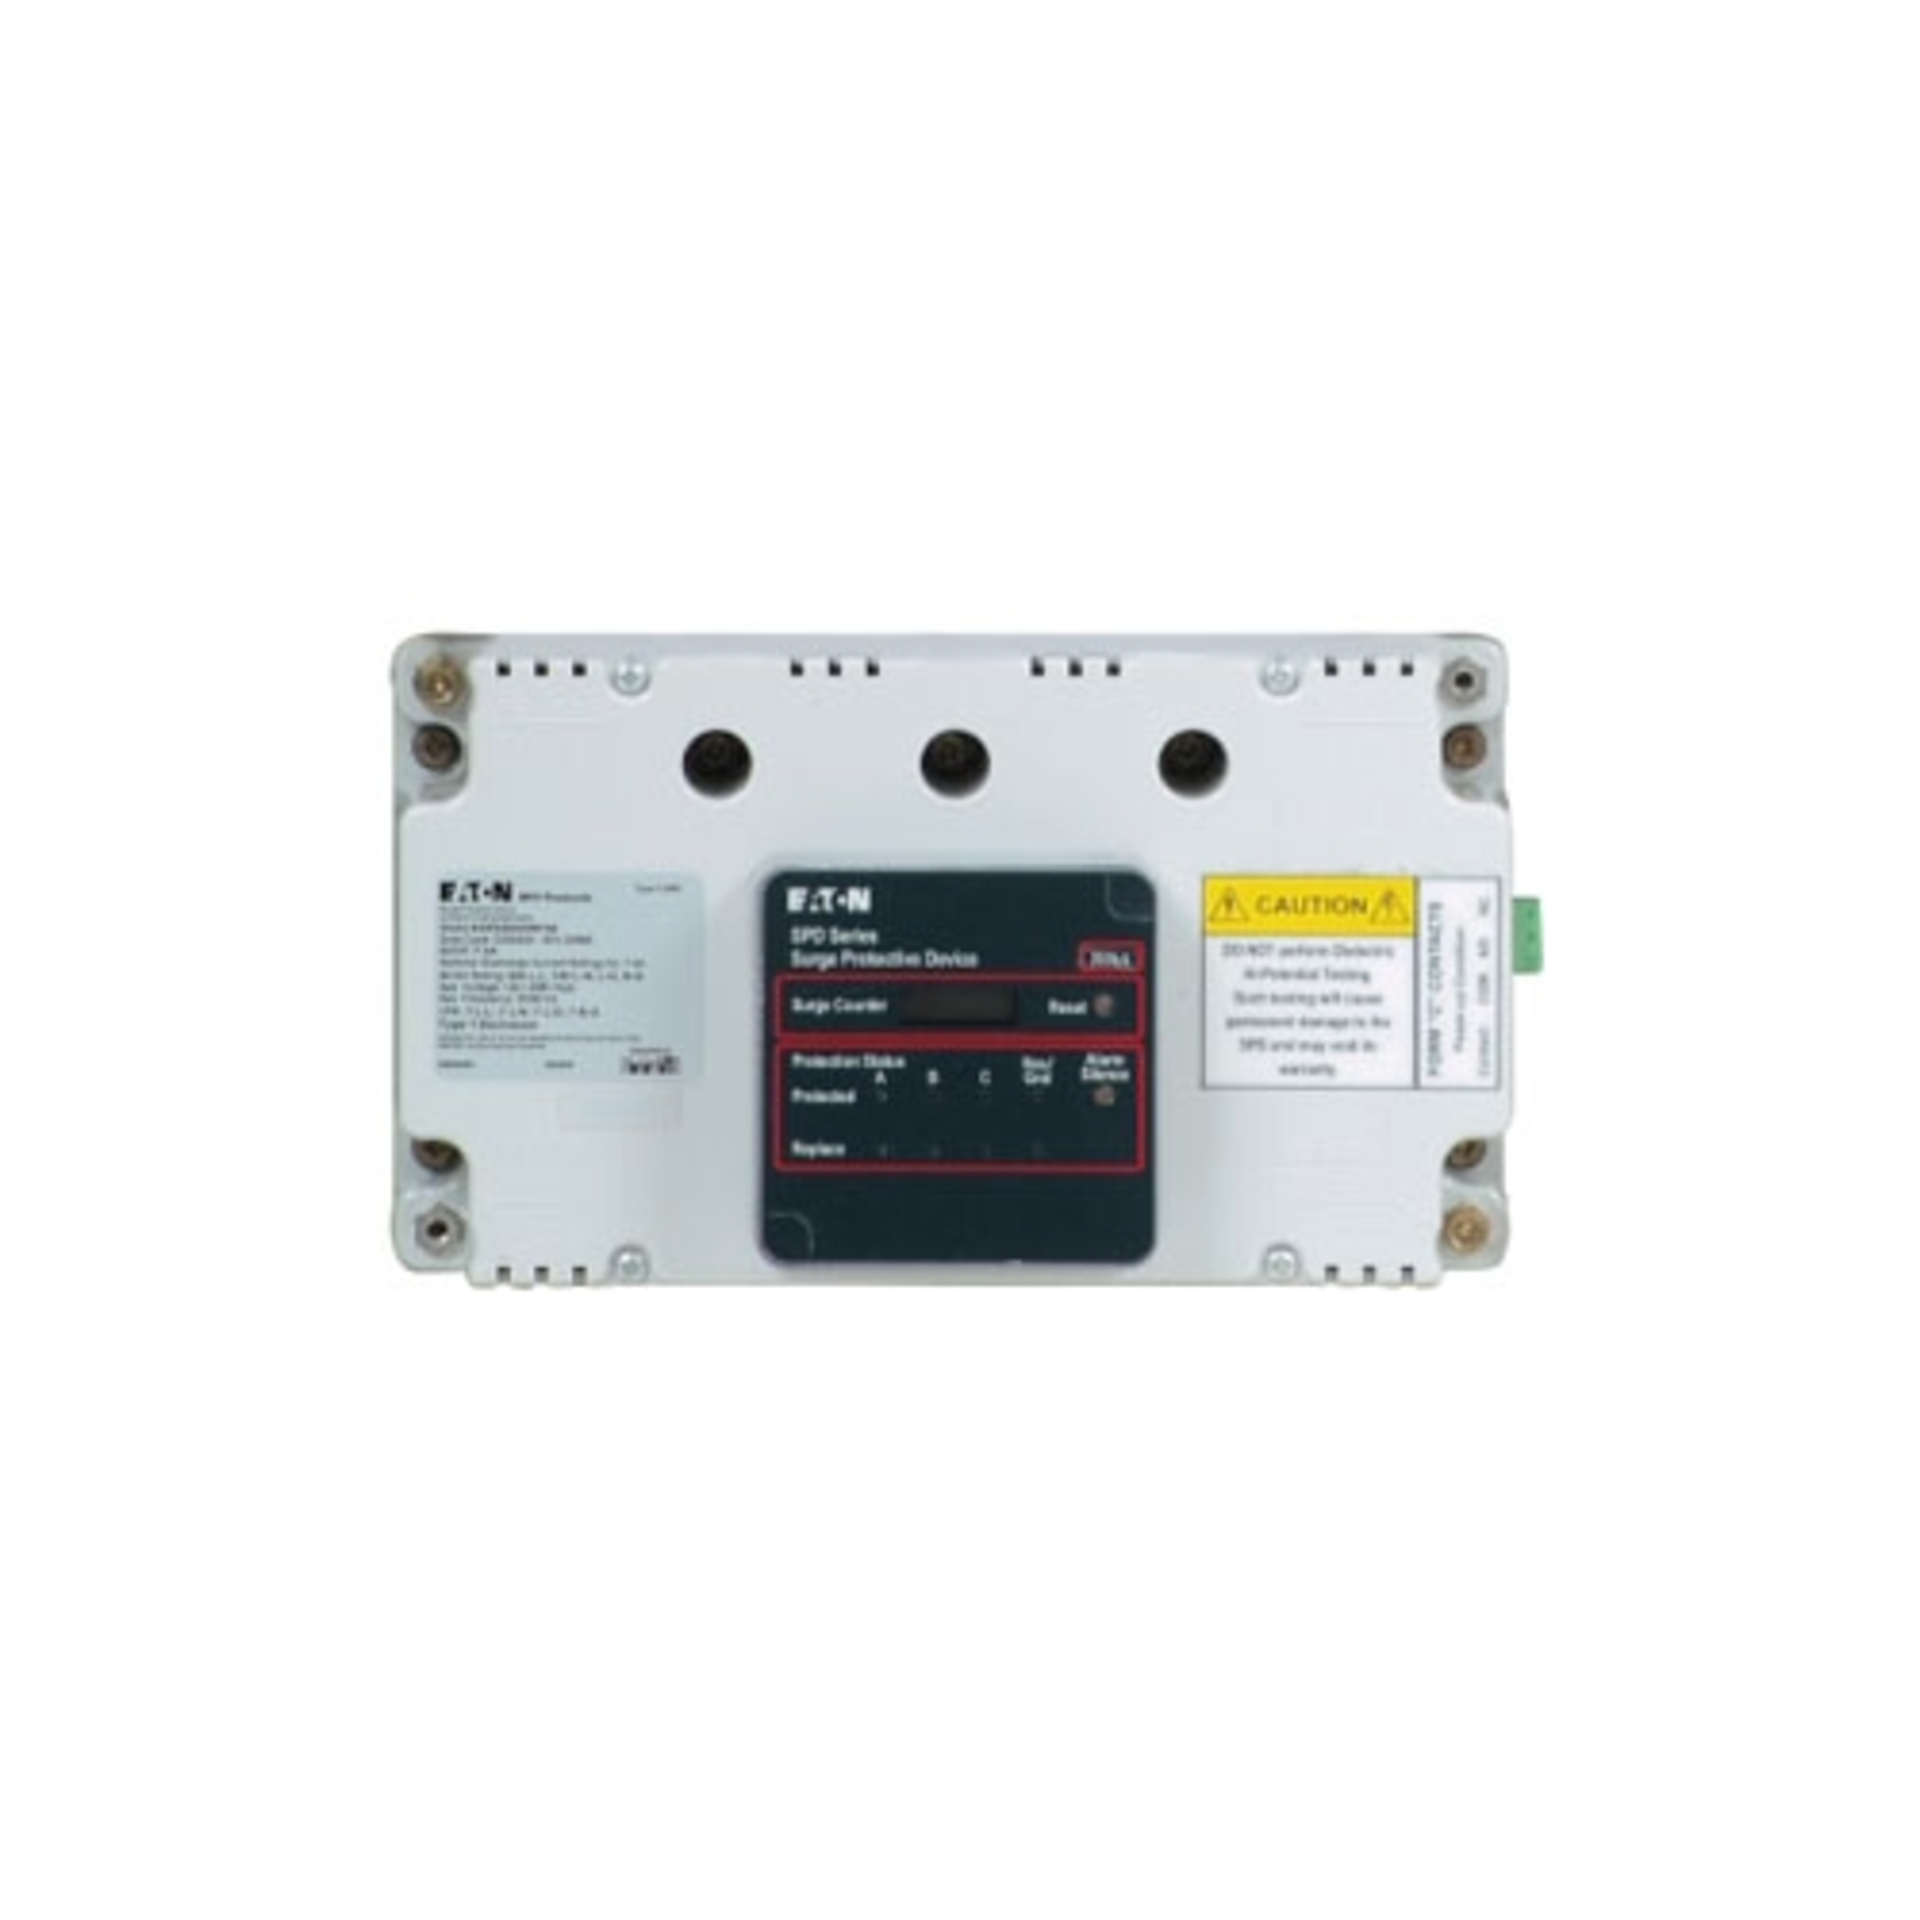 5x Eaton SPD050208Y3C Surge Protection Devices (SPDs) EA